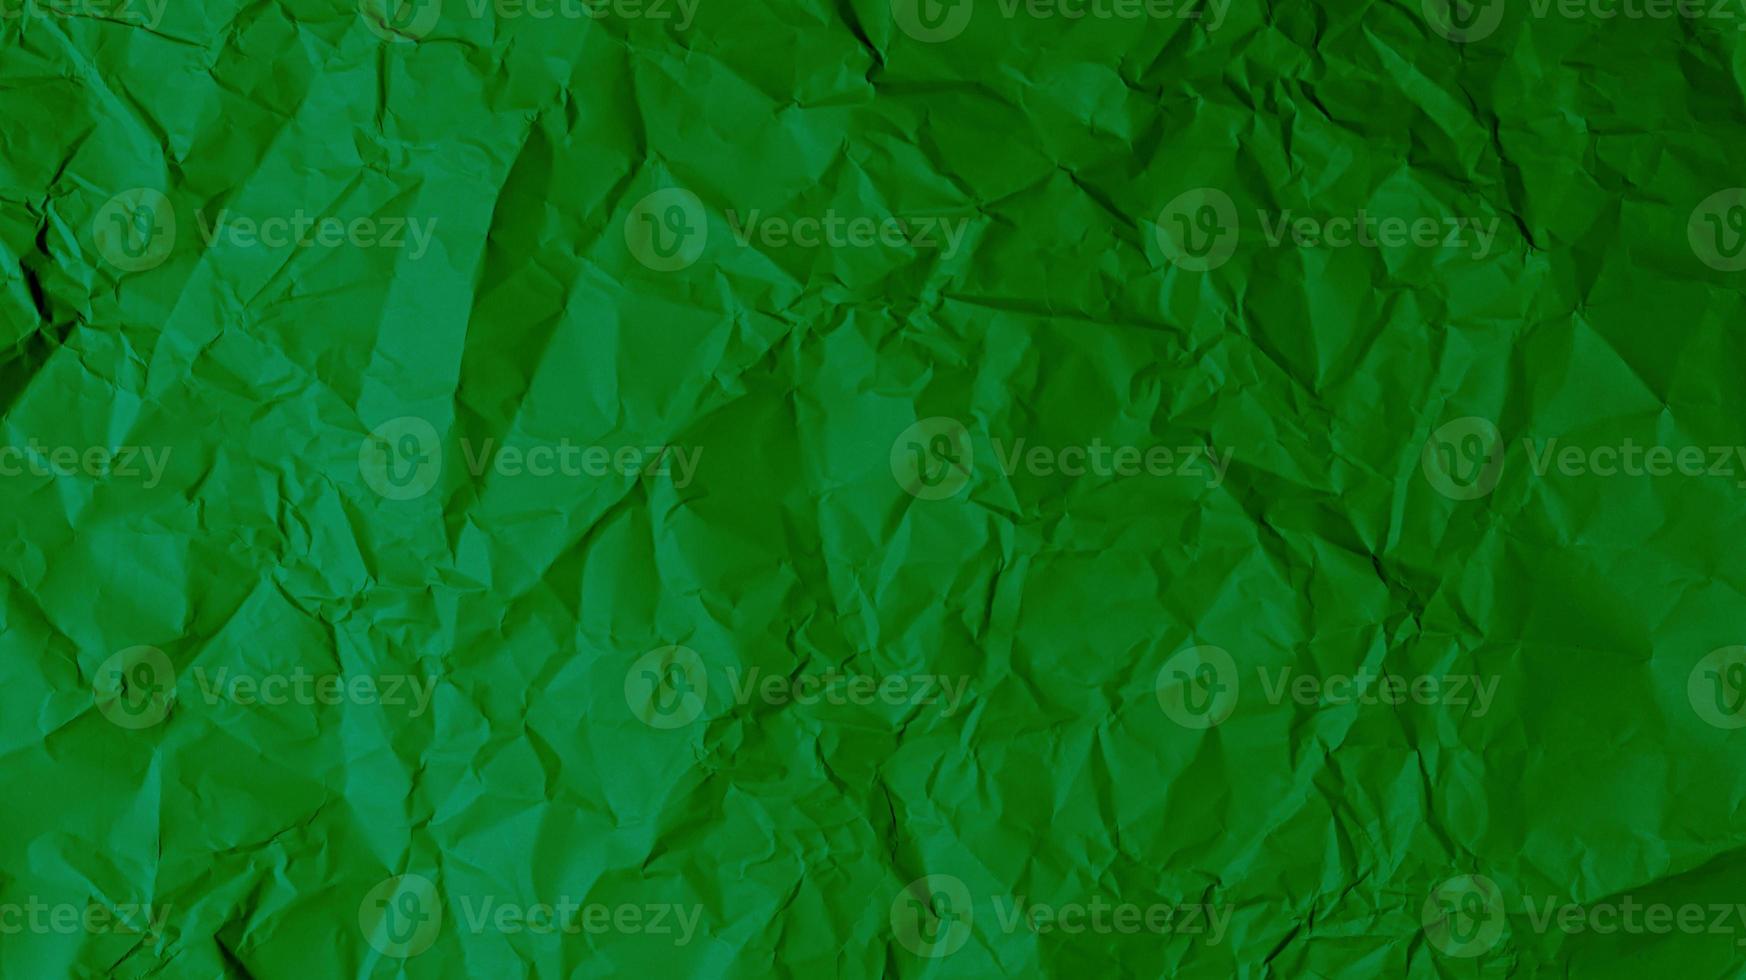 den gröna pappersbakgrunden är skrynklig, vilket skapar en grov textur med ljus och skugga. foto